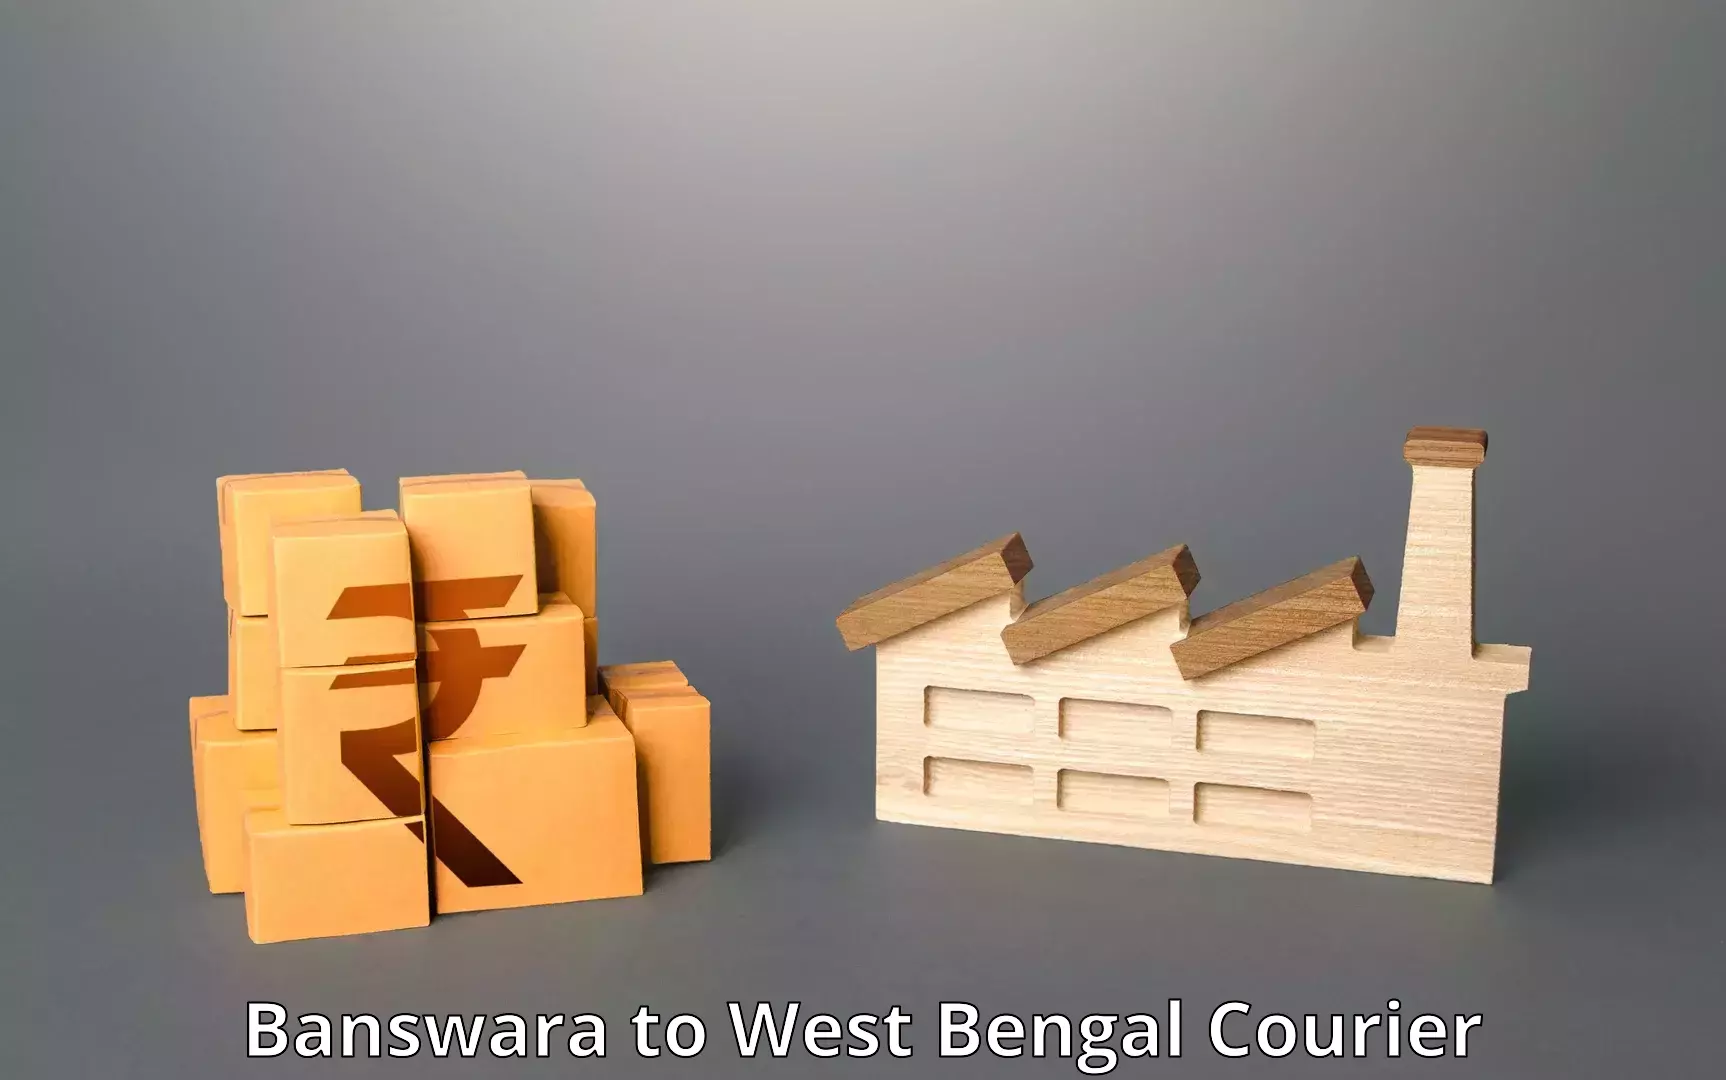 Express delivery solutions Banswara to Kolkata Port